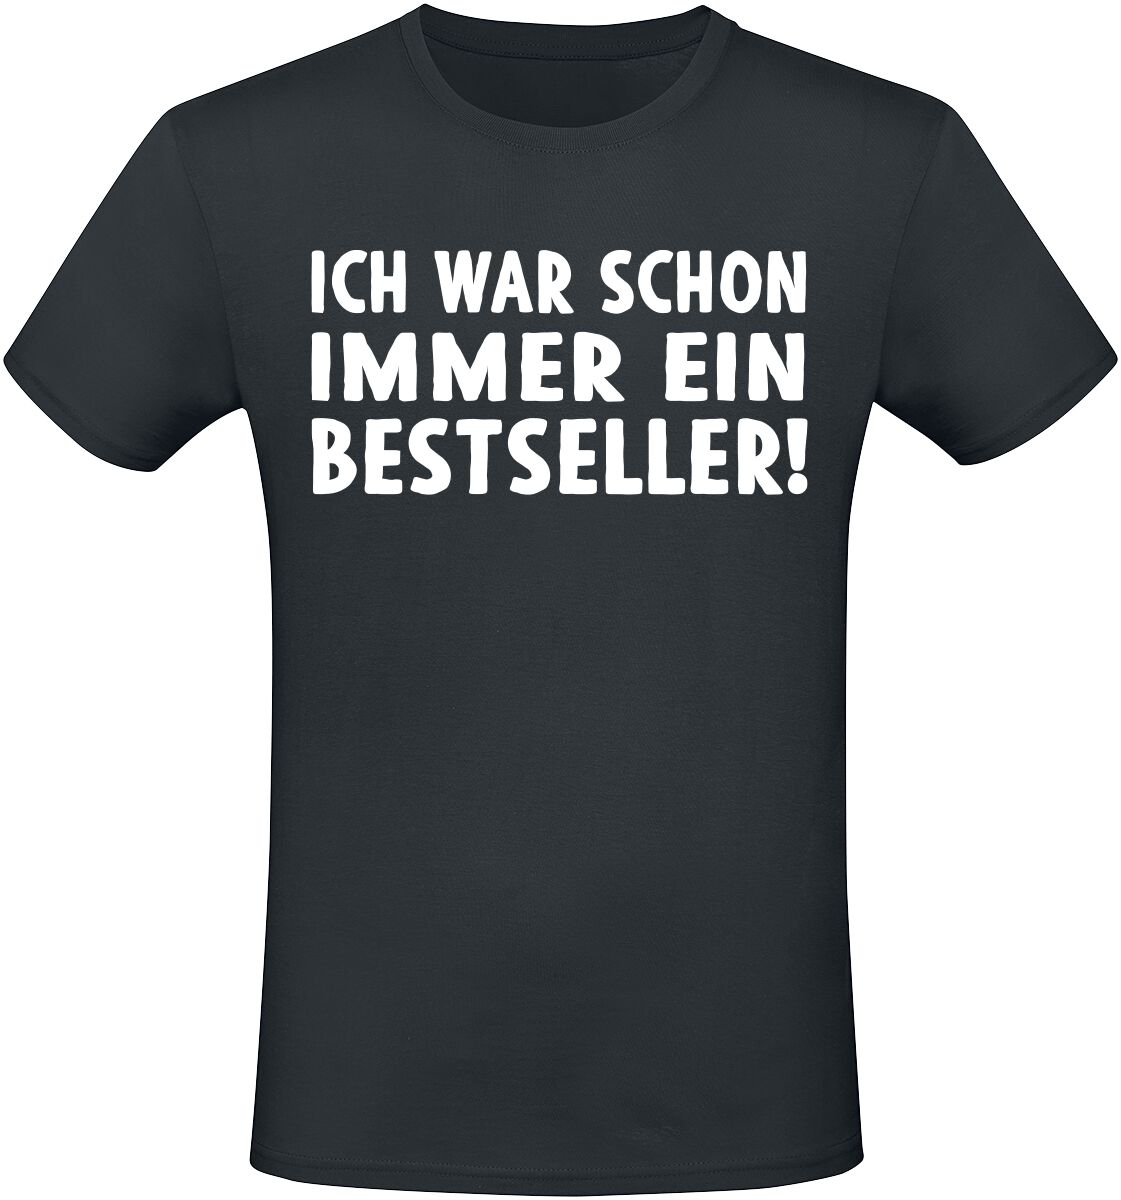 Sprüche T-Shirt - Ich war schon immer ein Bestseller! - M bis 5XL - für Männer - Größe 4XL - schwarz